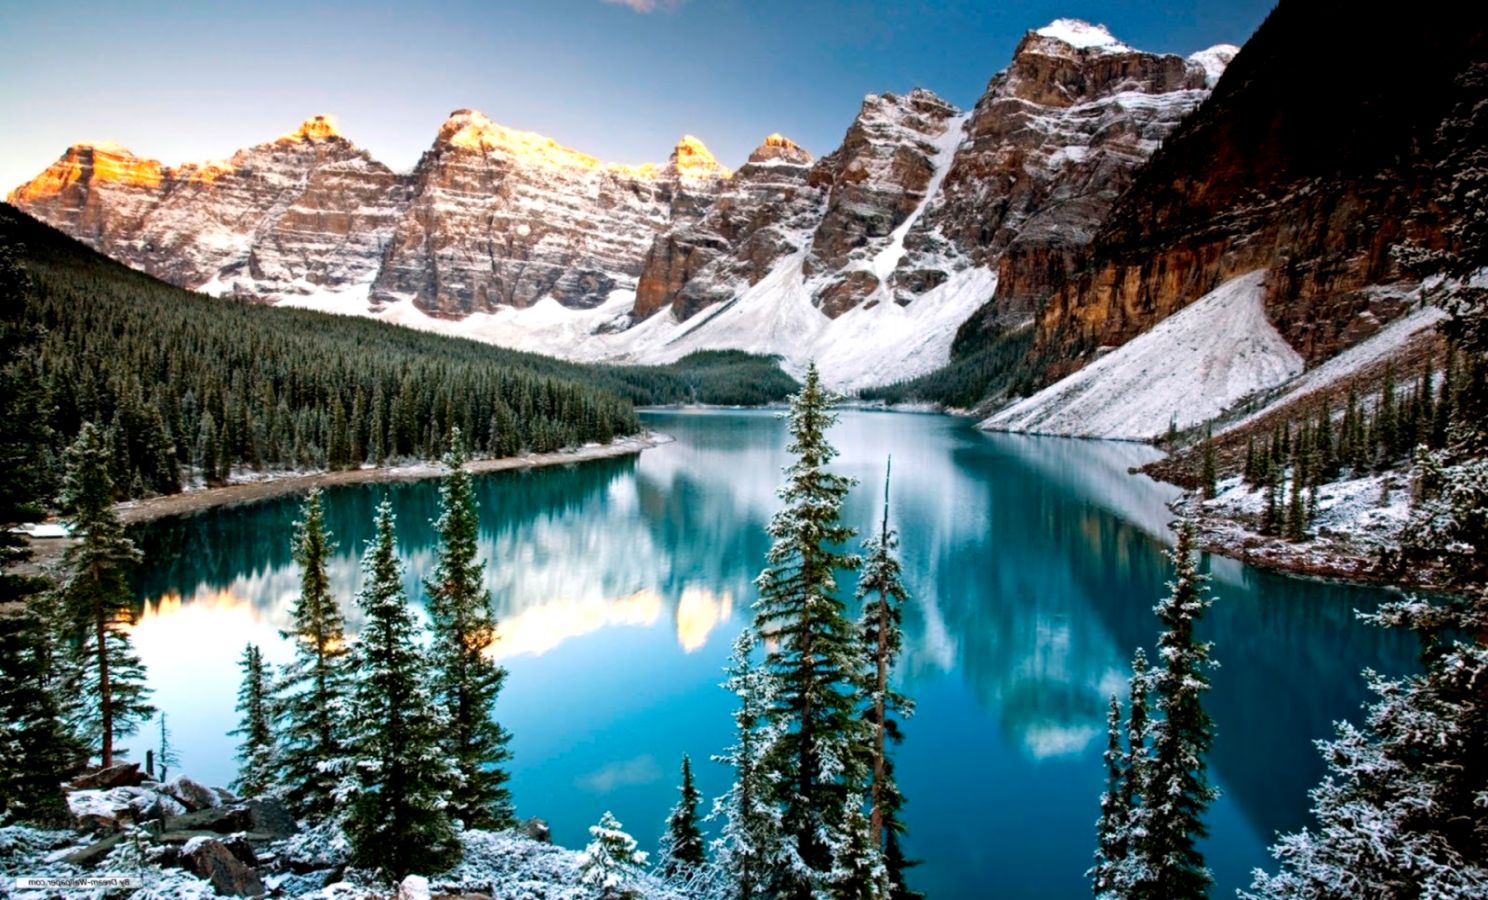 Winter Mountain Lake Desktop Wallpaper Free Download - Moraine Lake - HD Wallpaper 